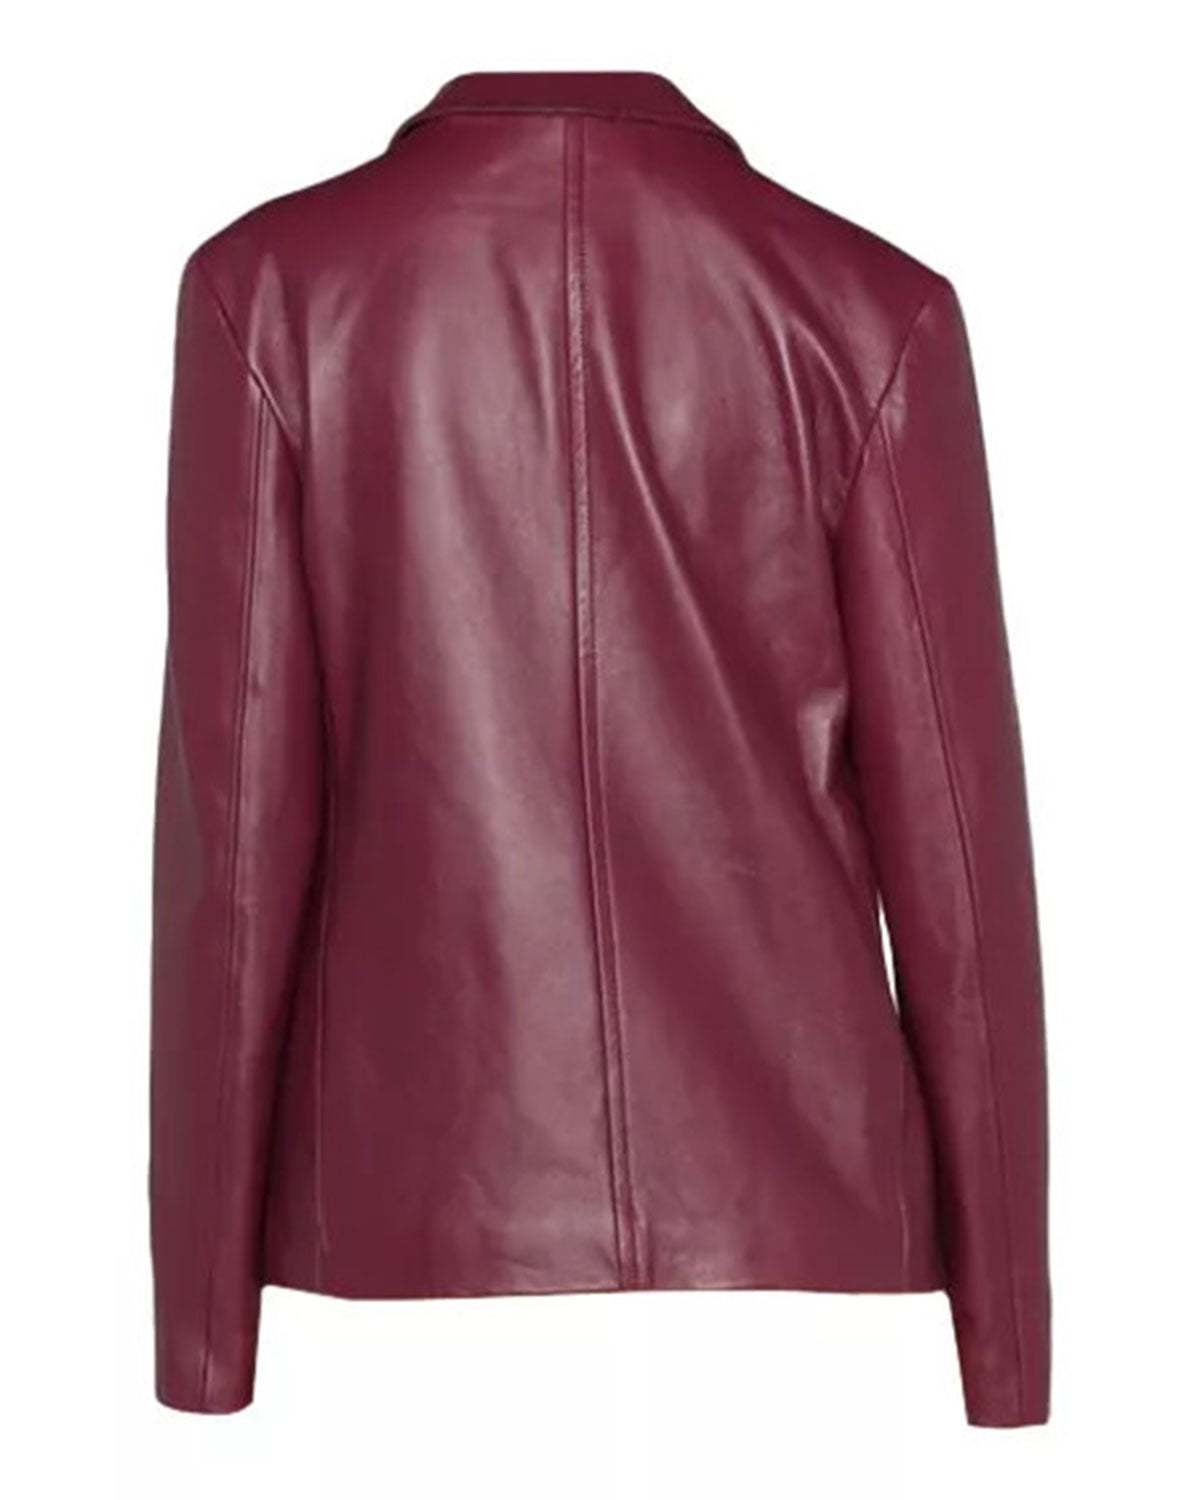 Womens Maroon Stylish Leather Jacket | Elite Jacket